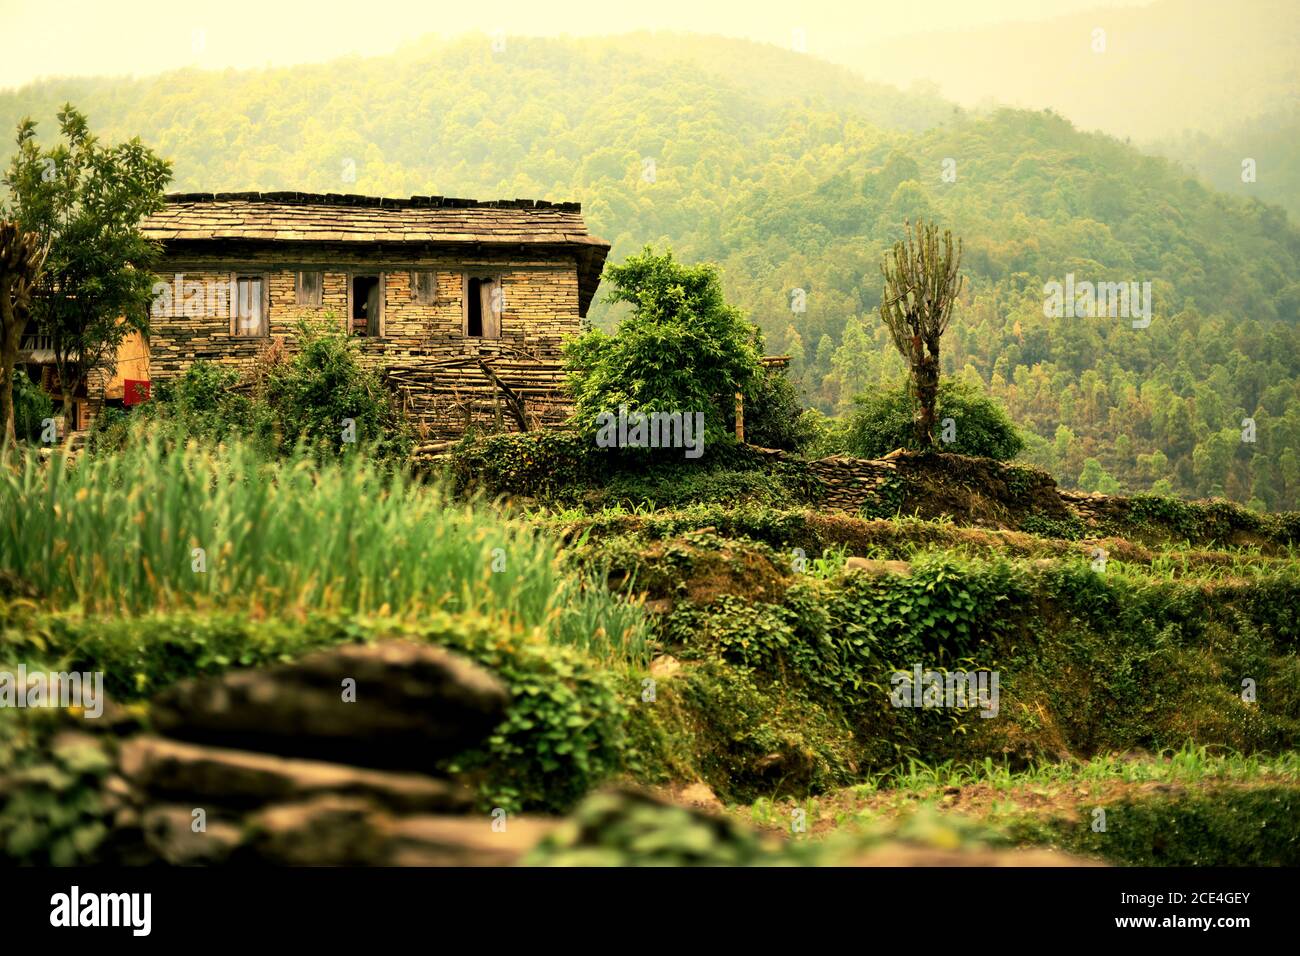 Une maison d'agriculteur dans le village agricole de Sidhane, dans la région montagneuse de Panchase, au Népal, où les habitants comptent également sur l'écotourisme. Banque D'Images